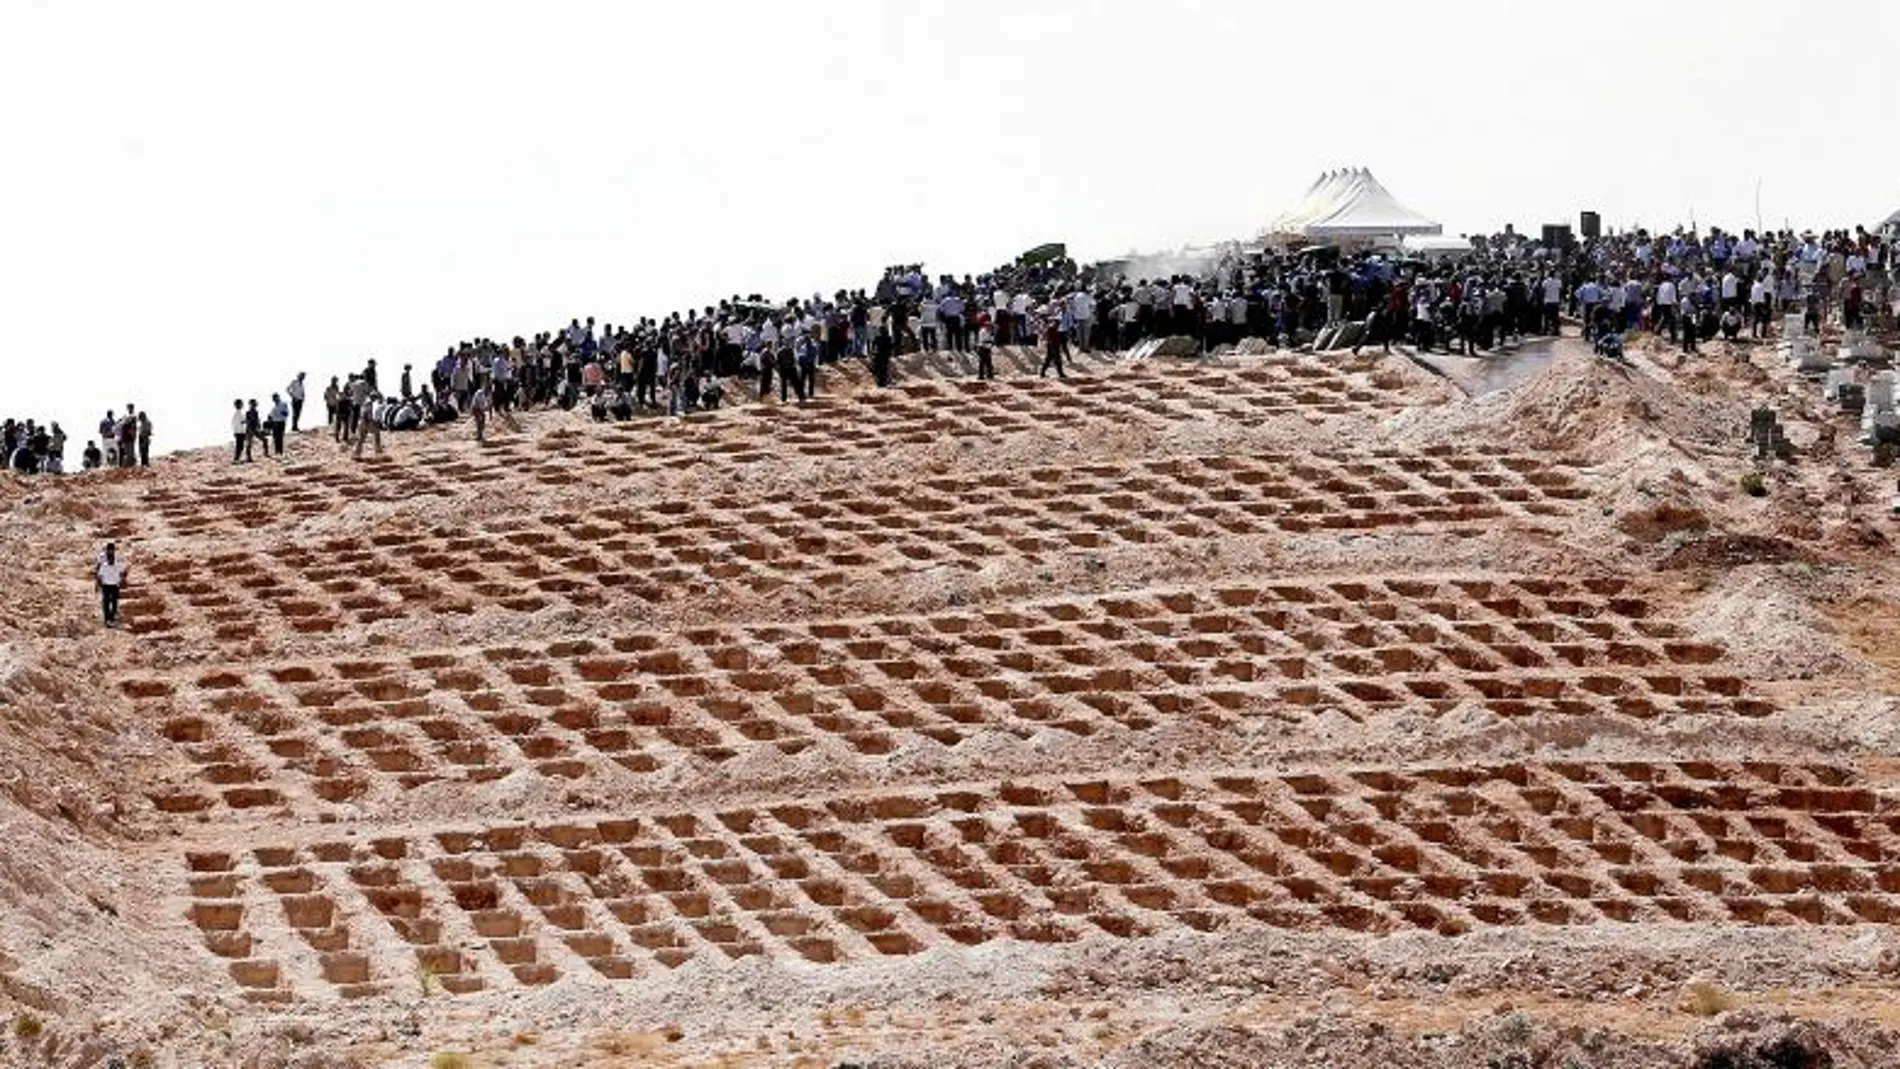 Las tumbas habilitadas para las víctimas del atentado, rodeadas de familiares y amigos, ayer en Gaziantep